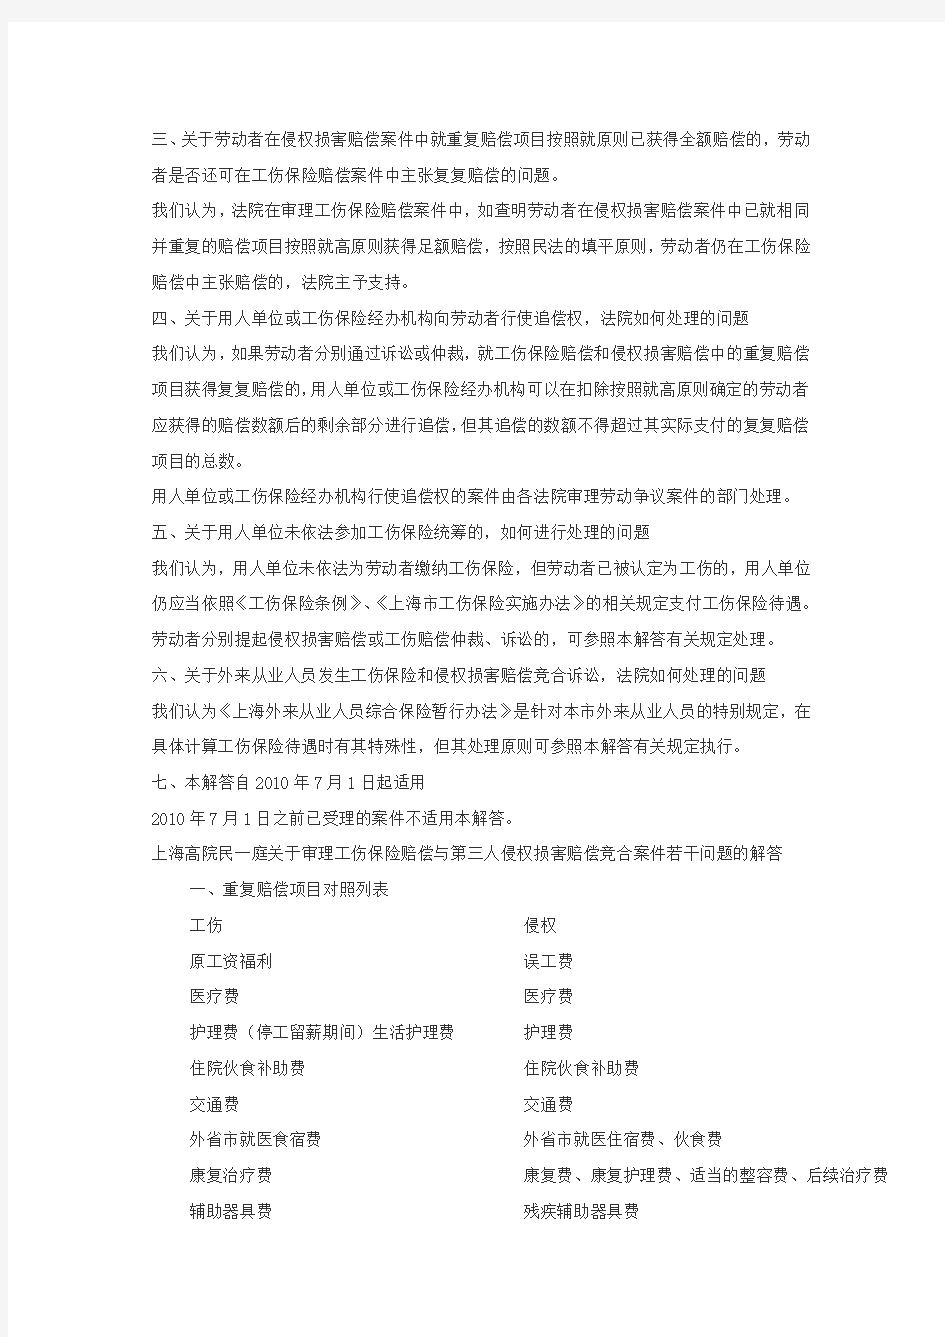 上海高院关于审理工伤赔偿与第三人侵权竞合案件问题的解答